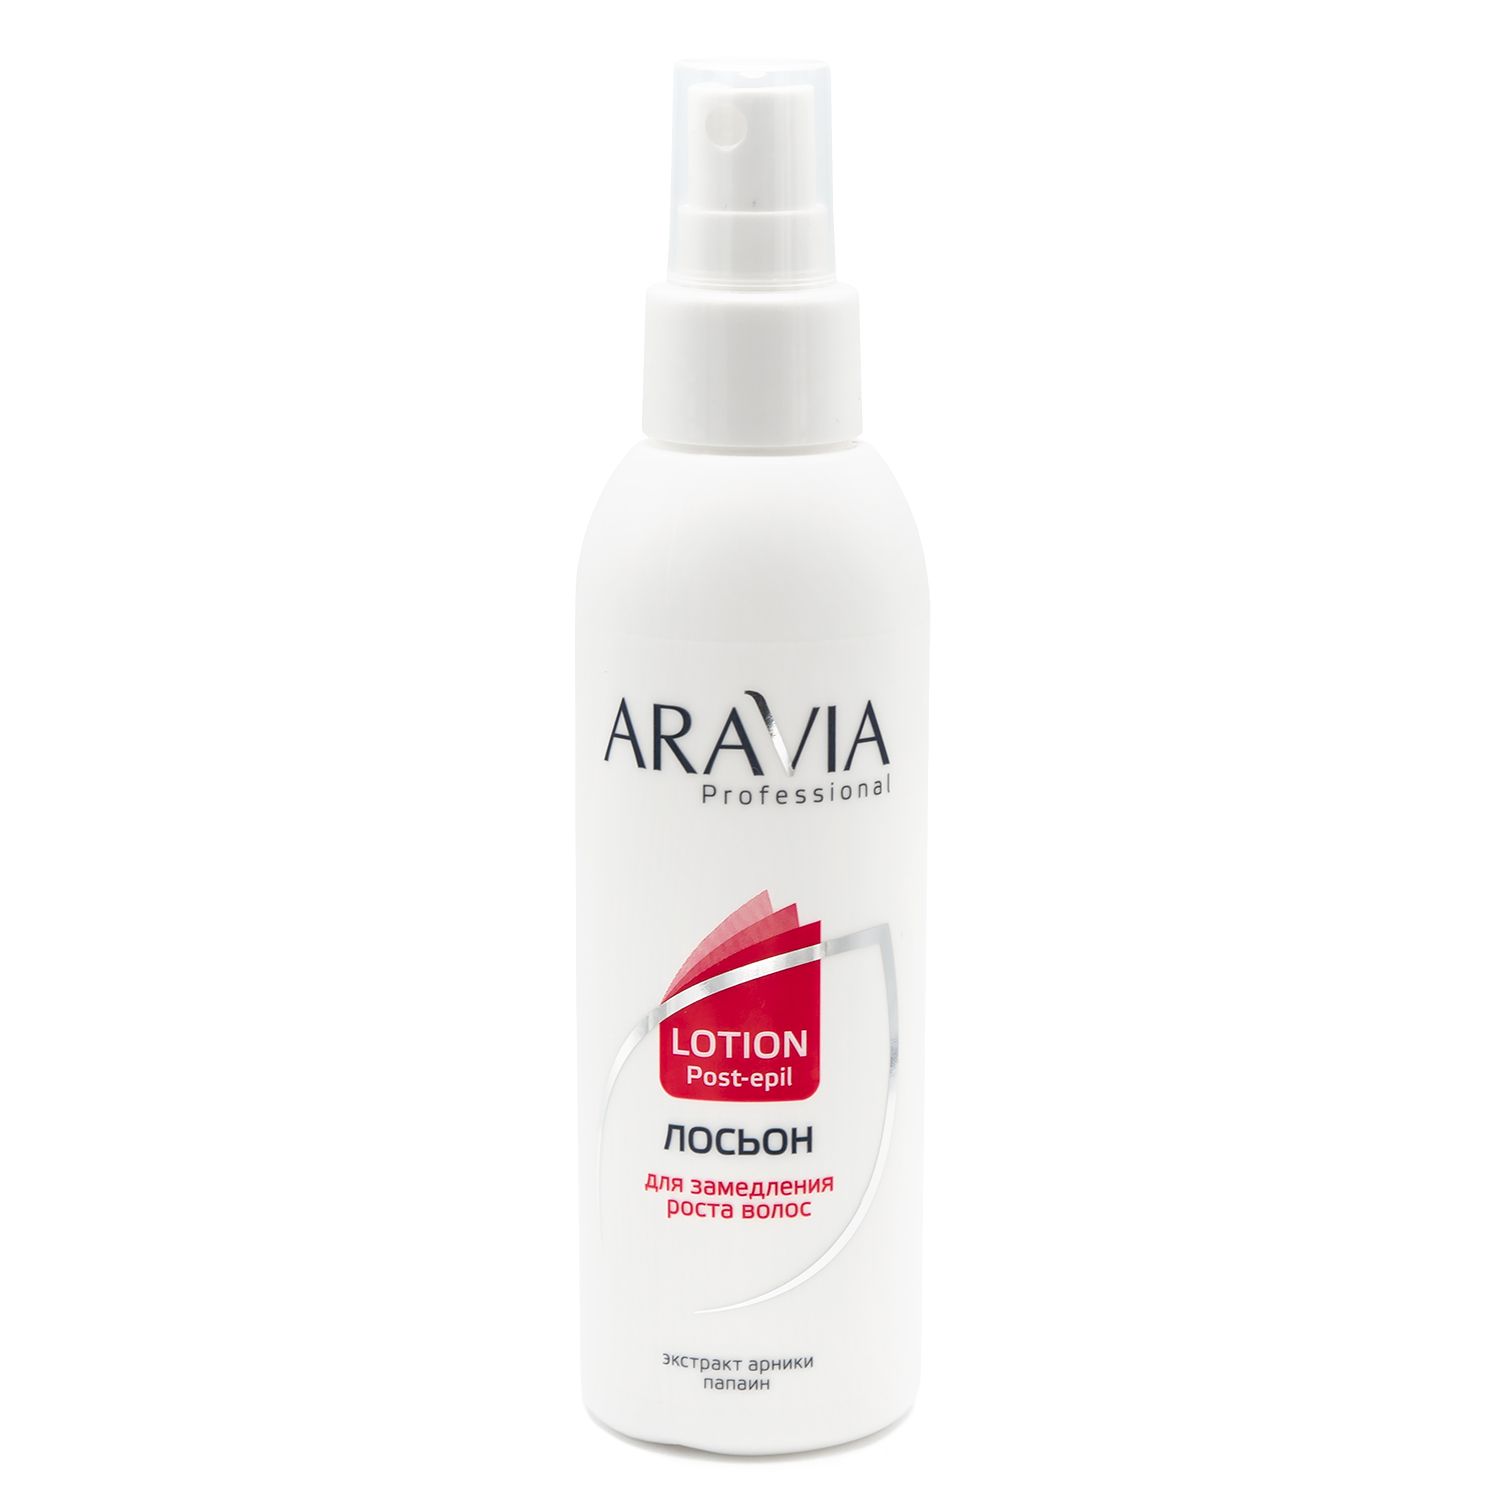 Aravia Professional Лосьон для замедления роста волос с экстрактом арники, 150мл